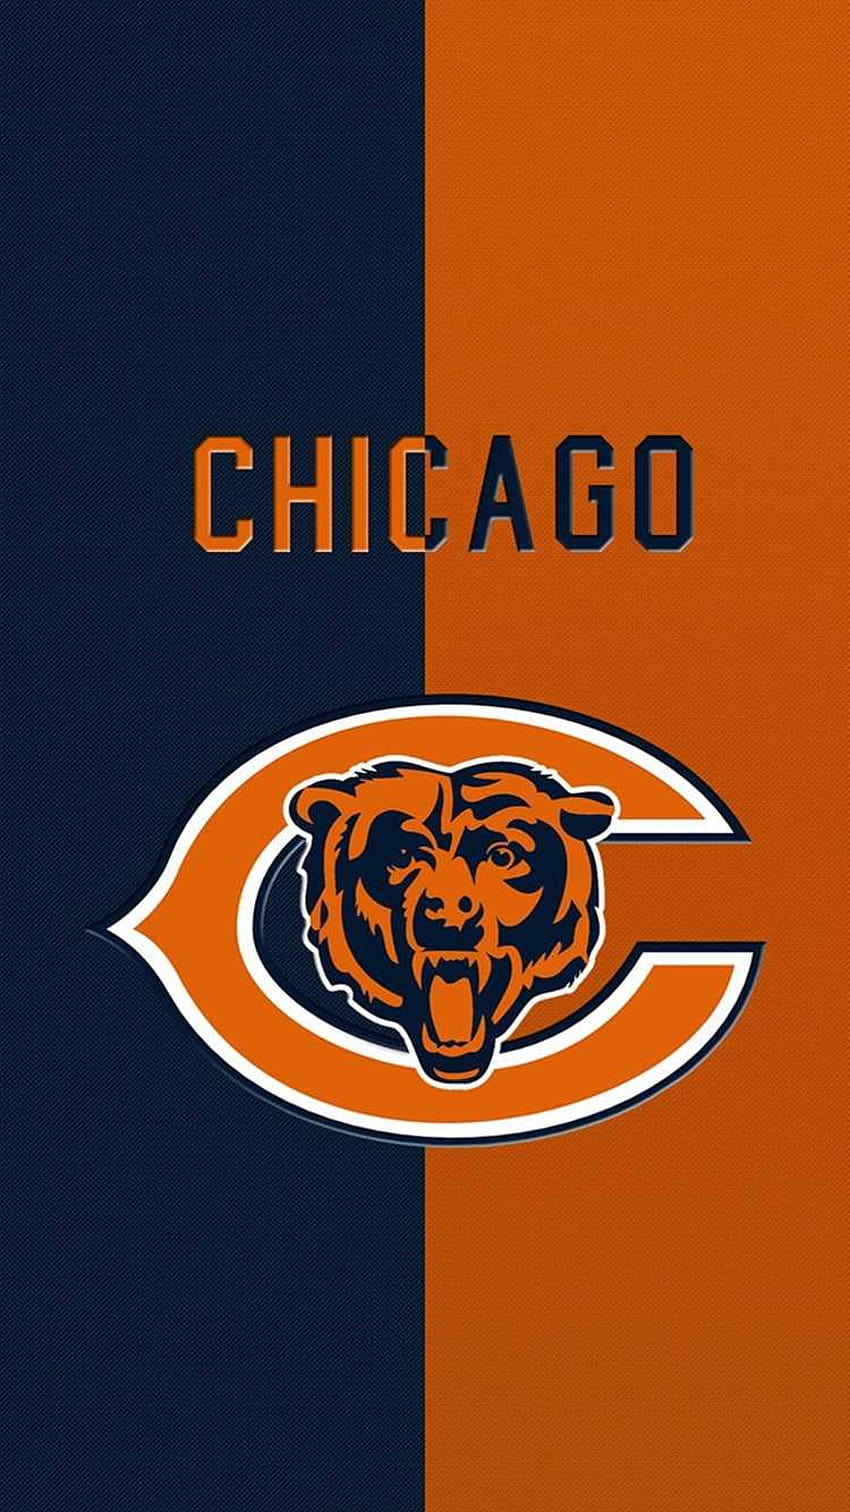 chicago bears wallpaper